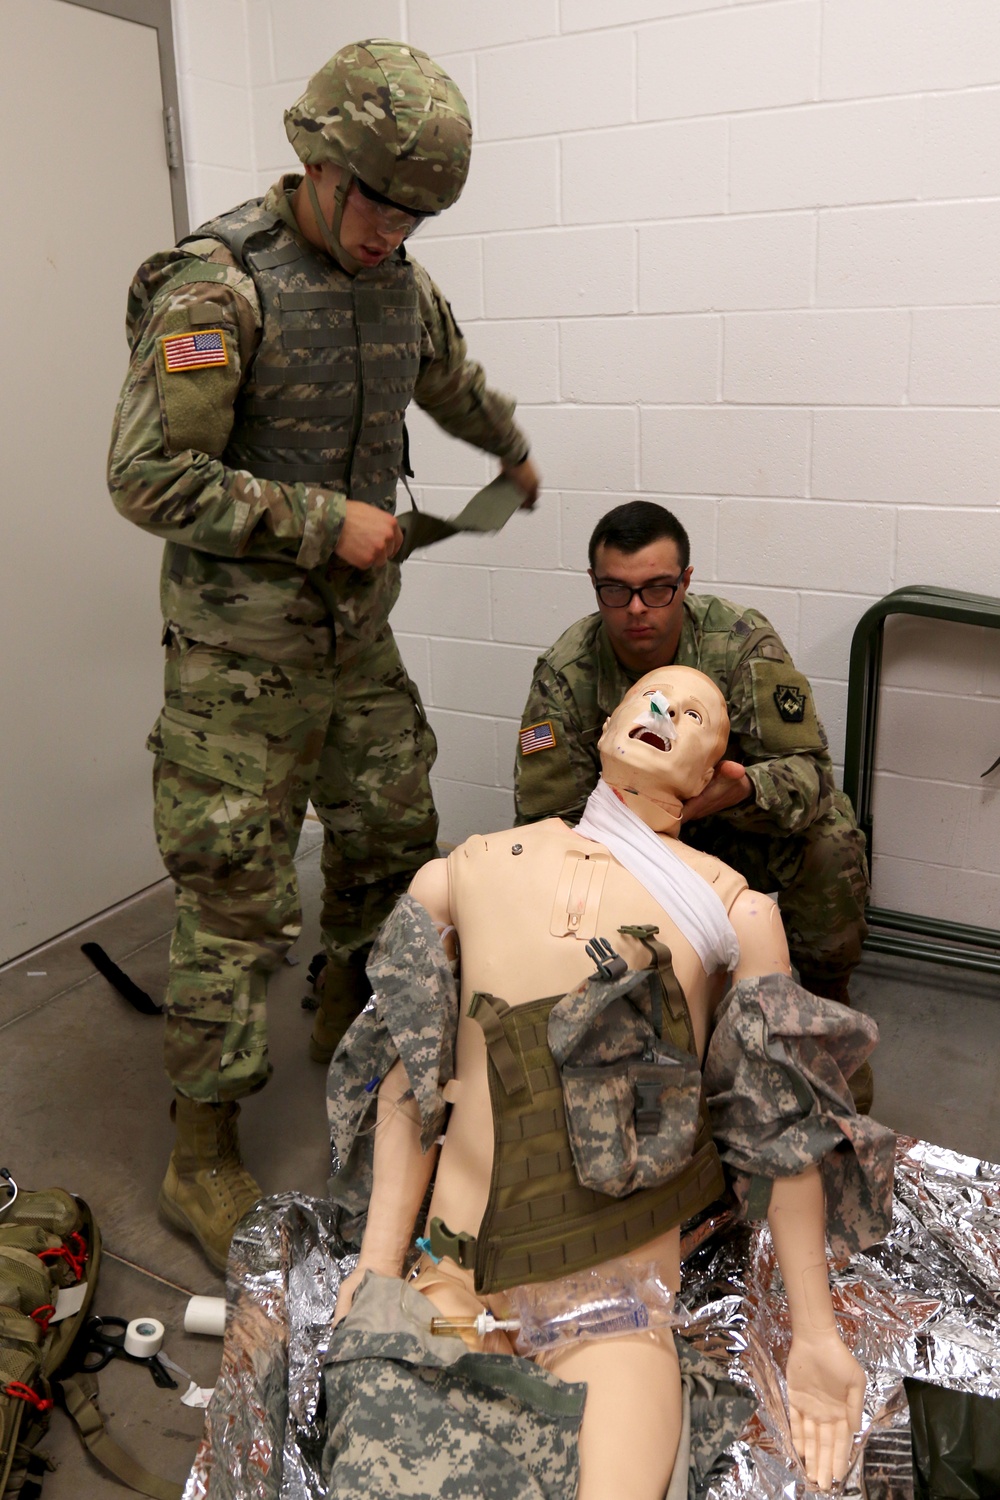 108th ASMC medics receive EMT recertification